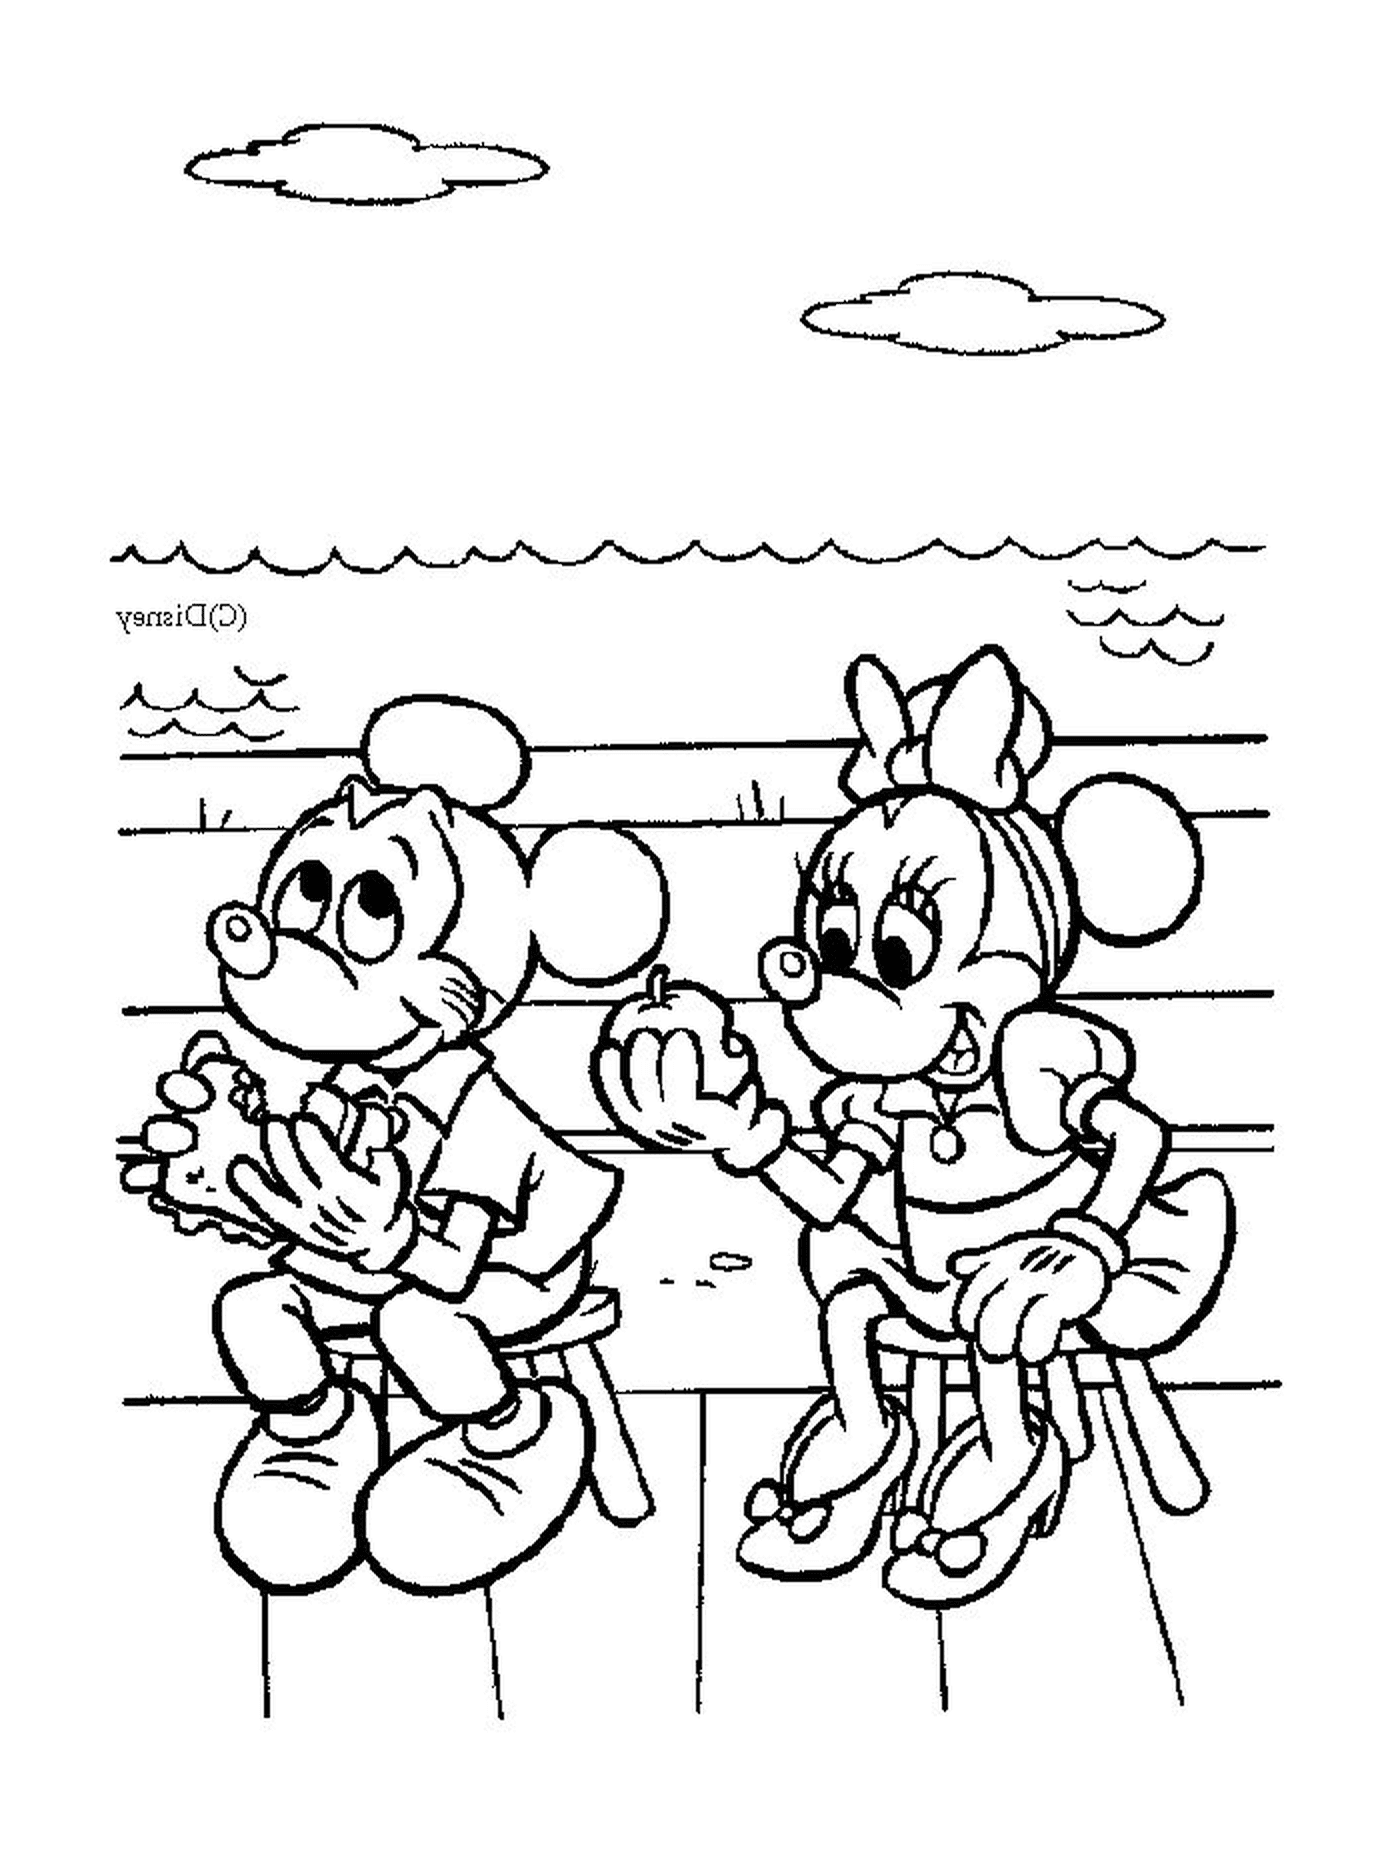  Mickey Mouse y Minnie Mouse sentados en un banco 